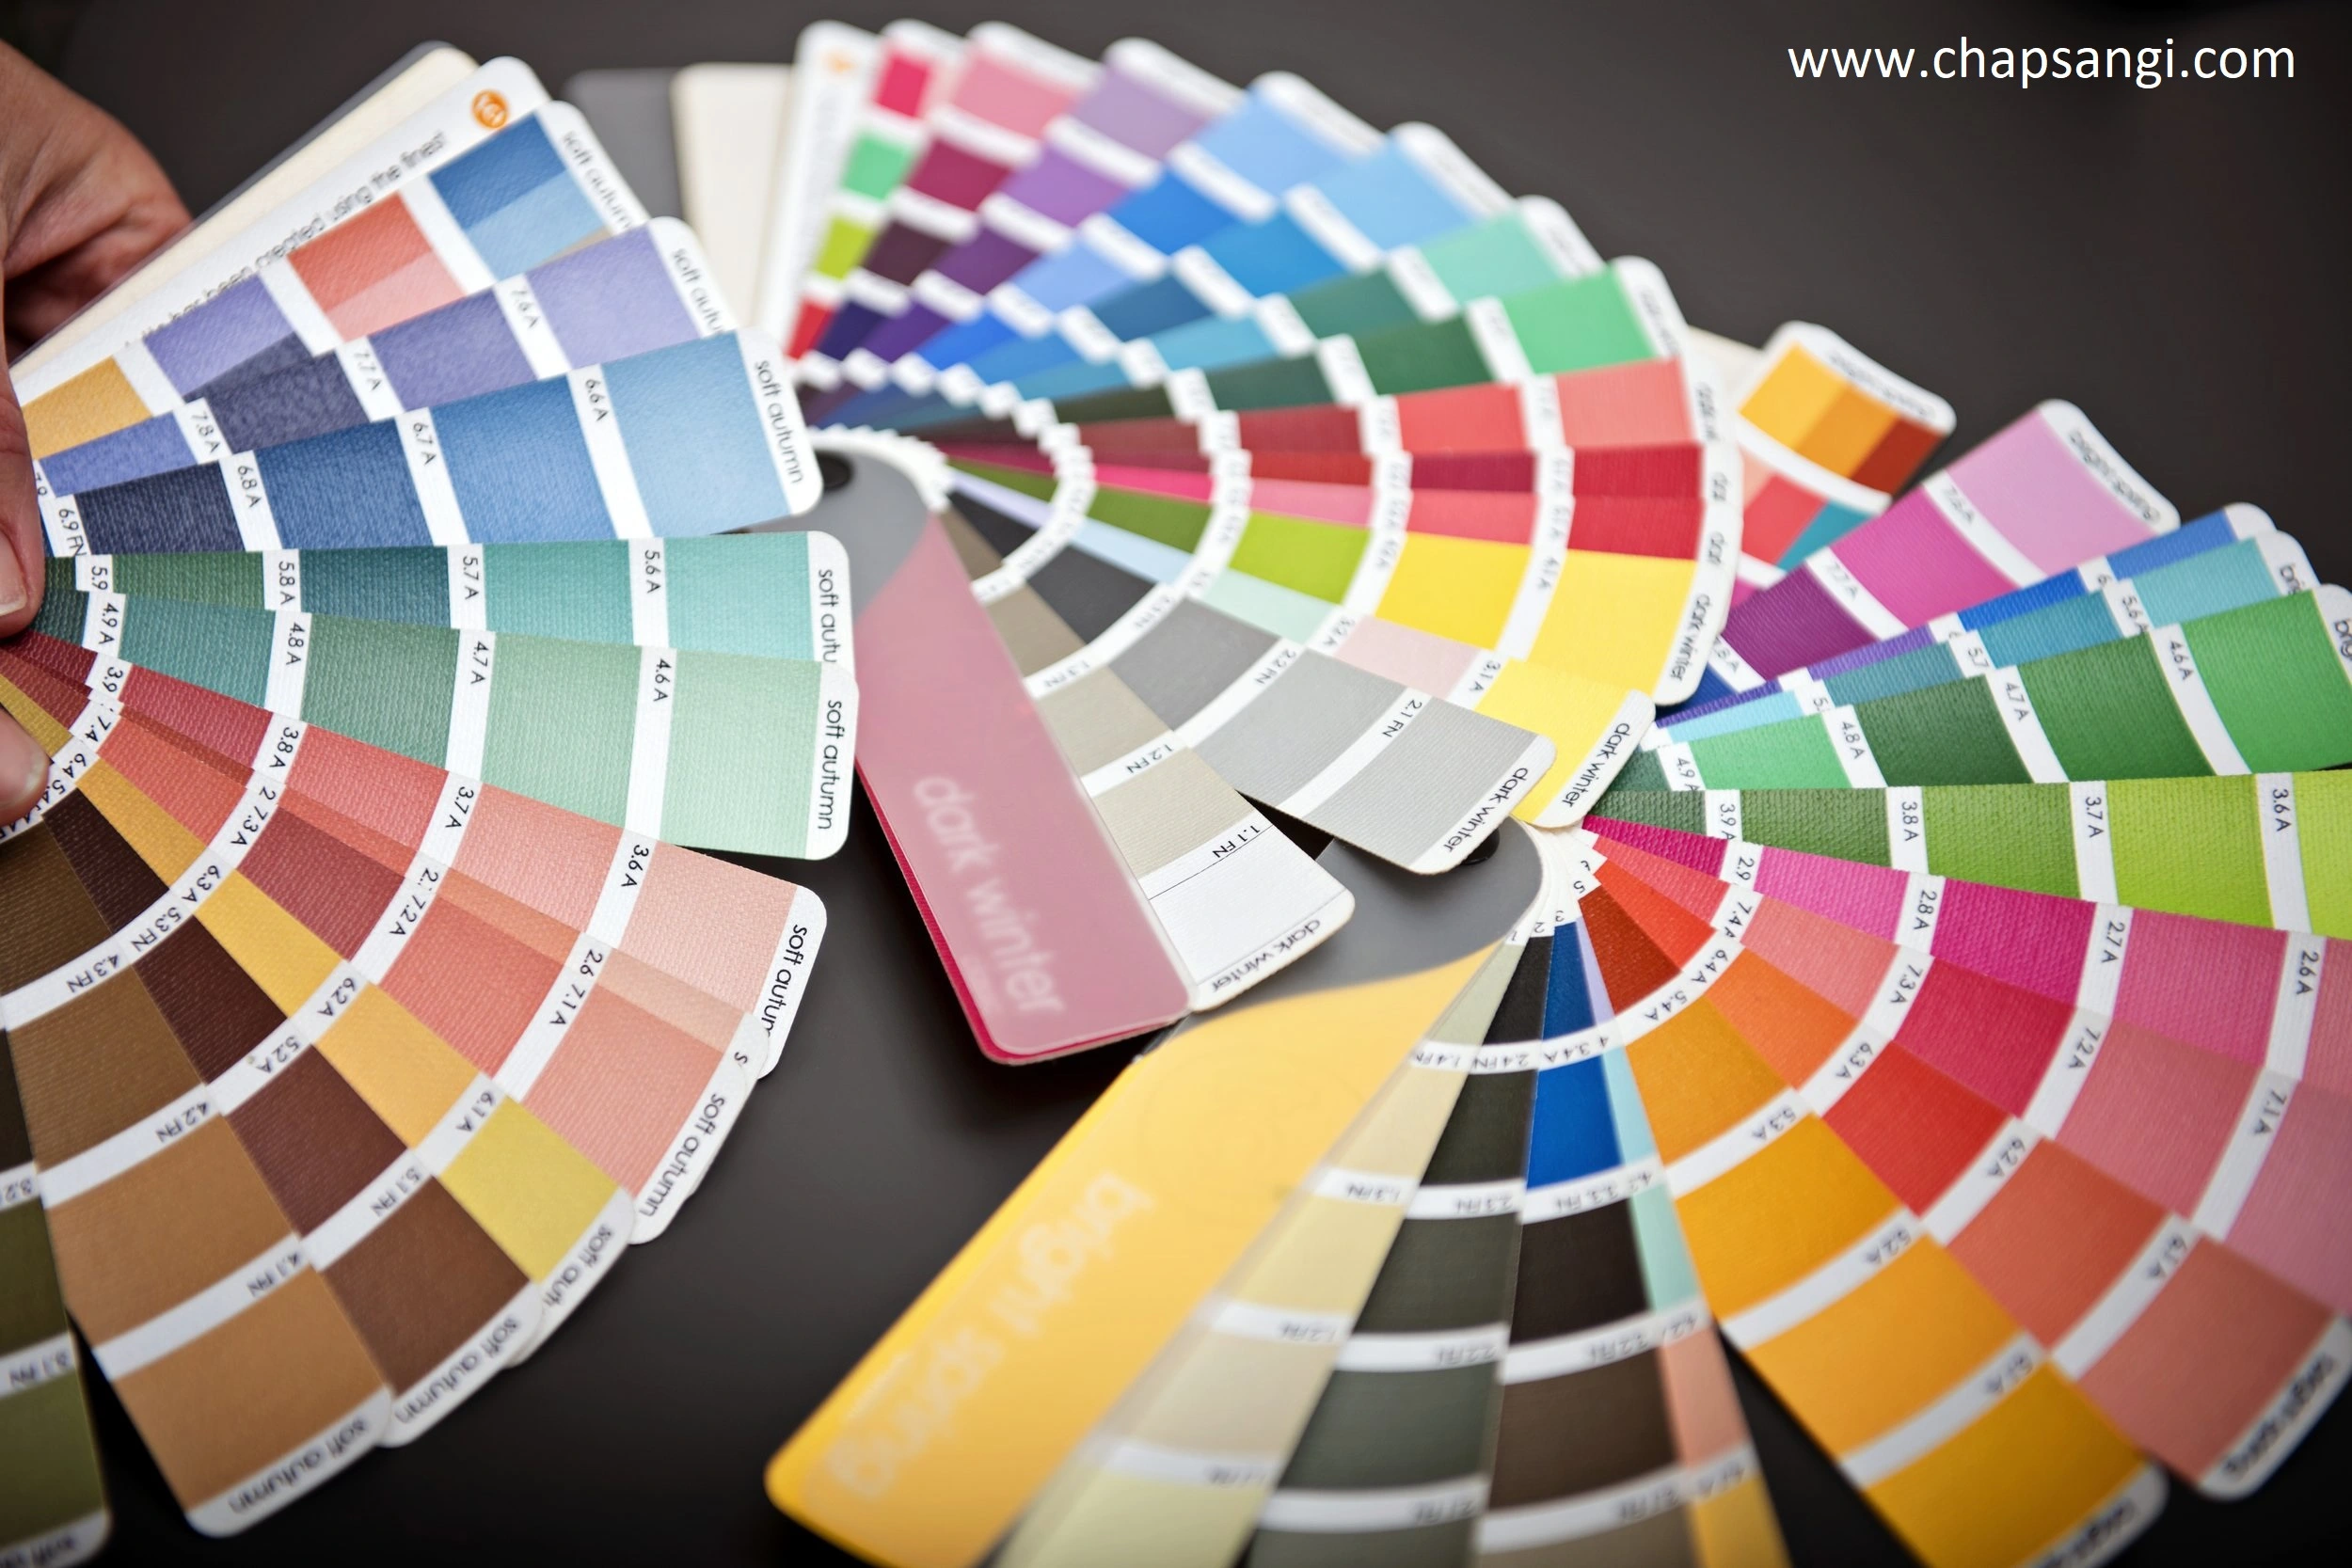 رنگ های ترند برای پرینت رنگی - چاپ سنگی